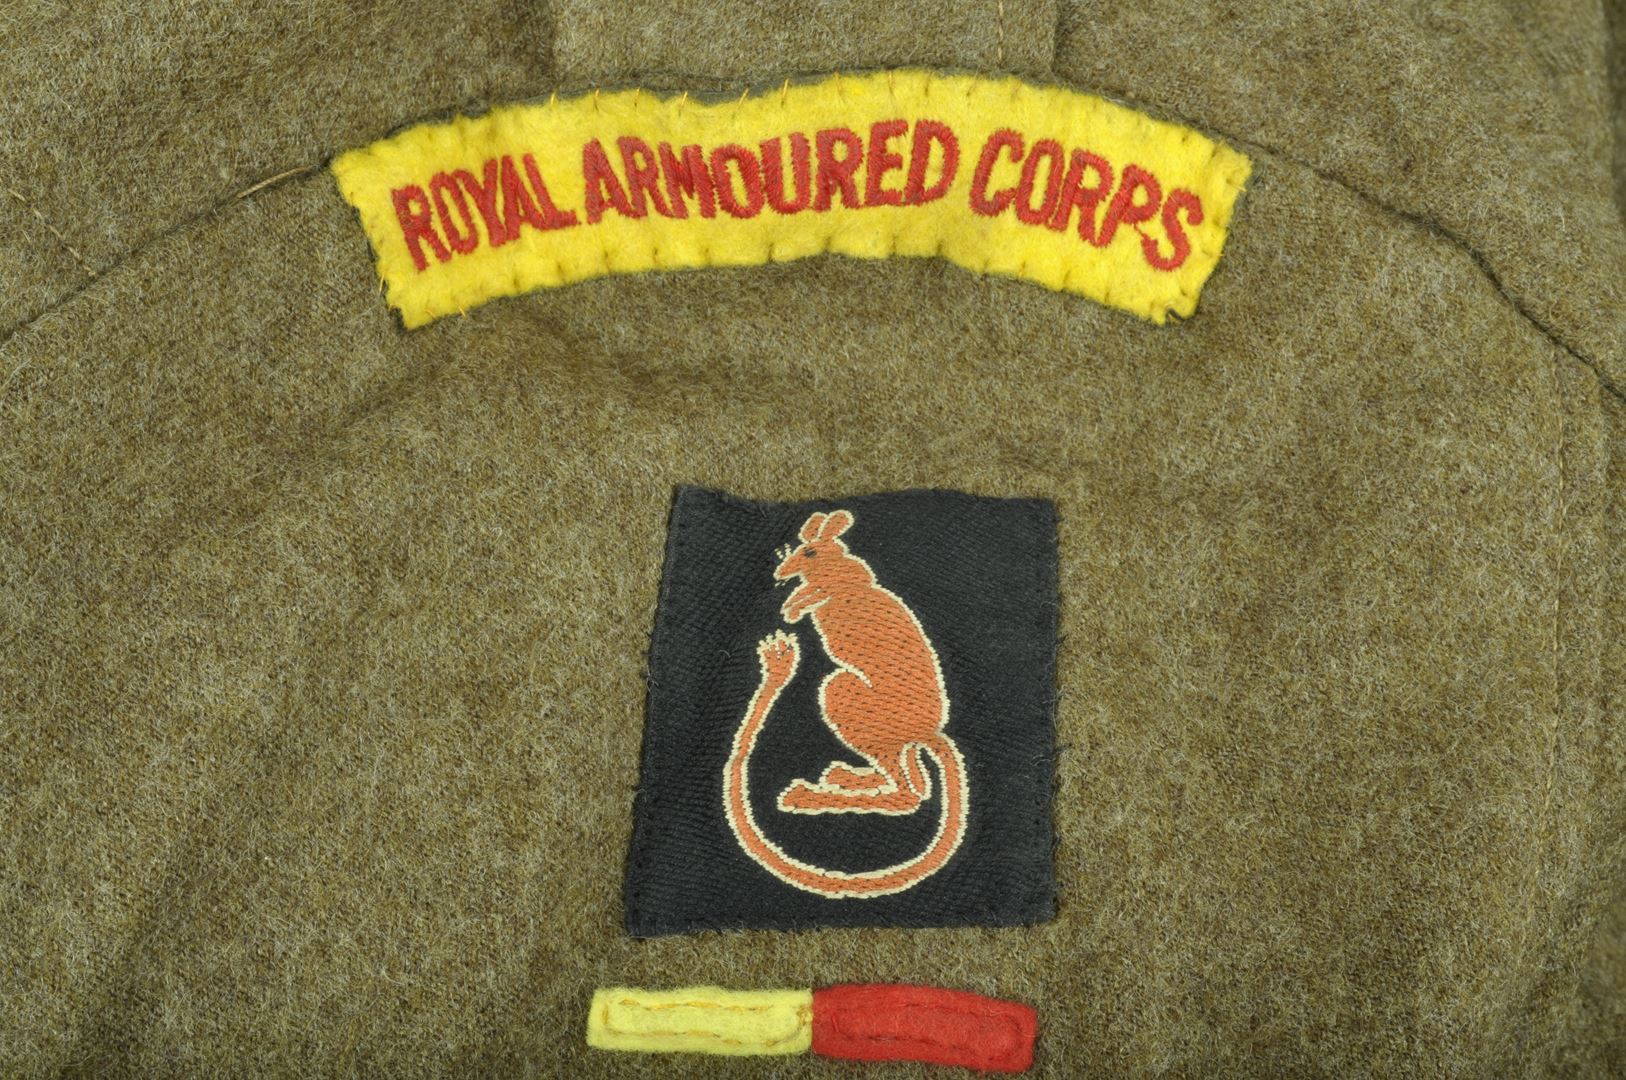 Blouson Battle Dress daté 1943 7ième Division Blindée / "Royal Armoured Corps"